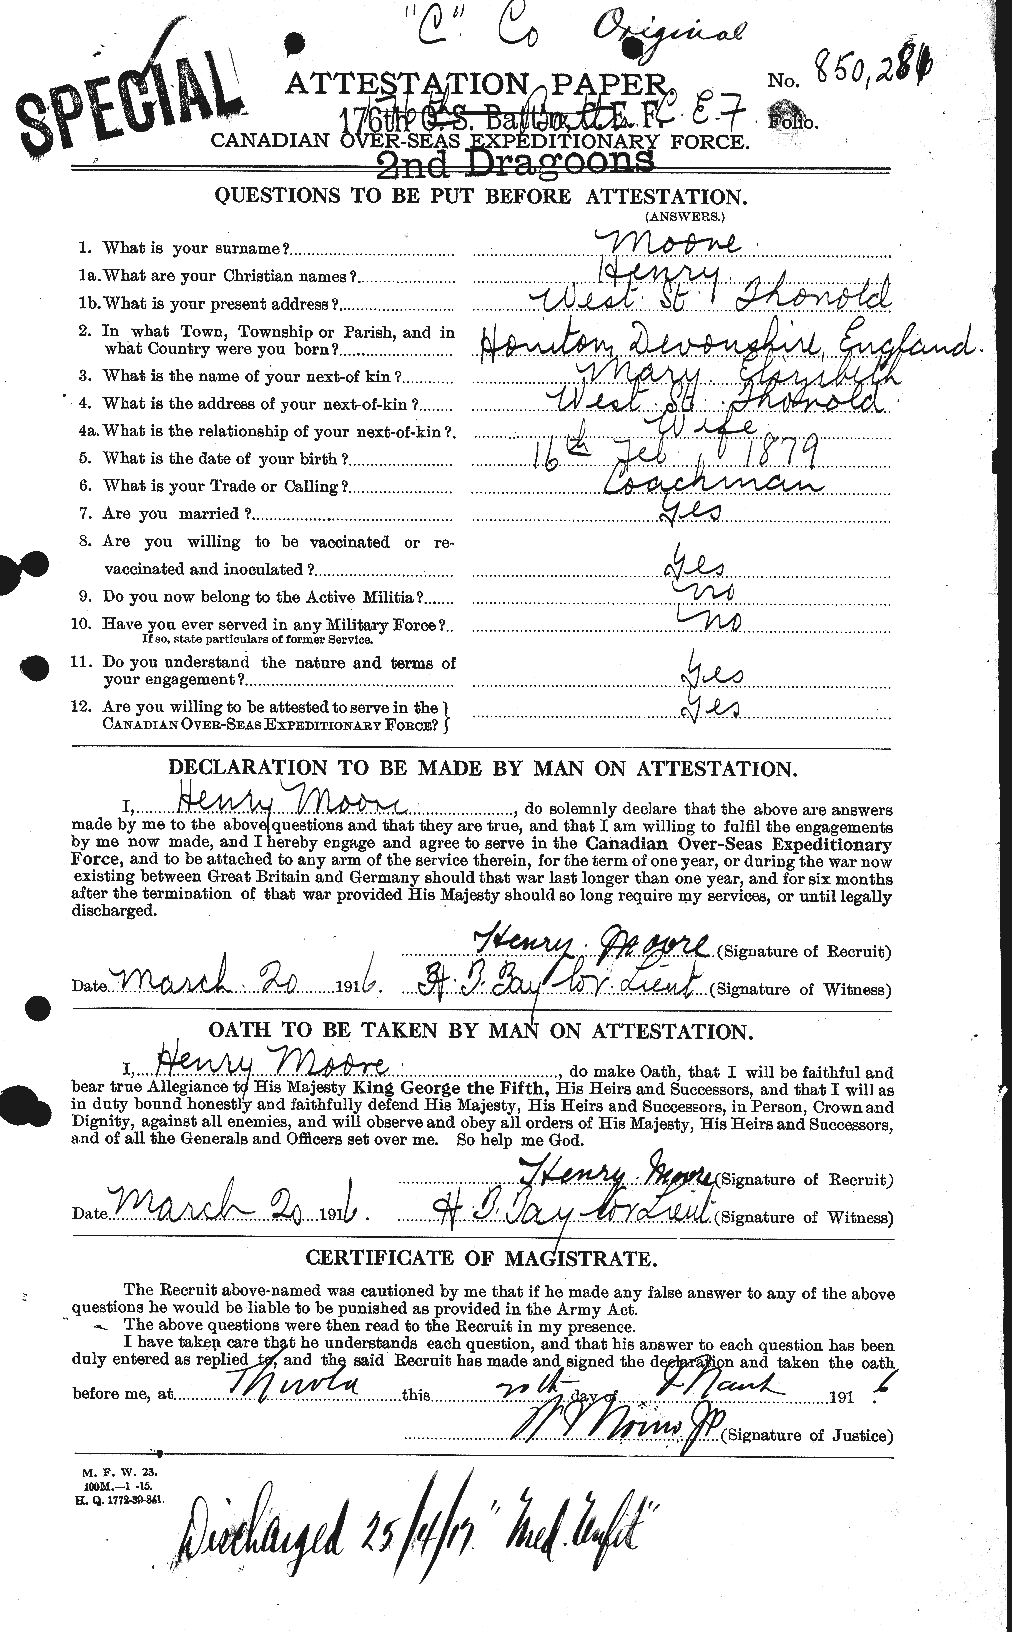 Dossiers du Personnel de la Première Guerre mondiale - CEC 502094a